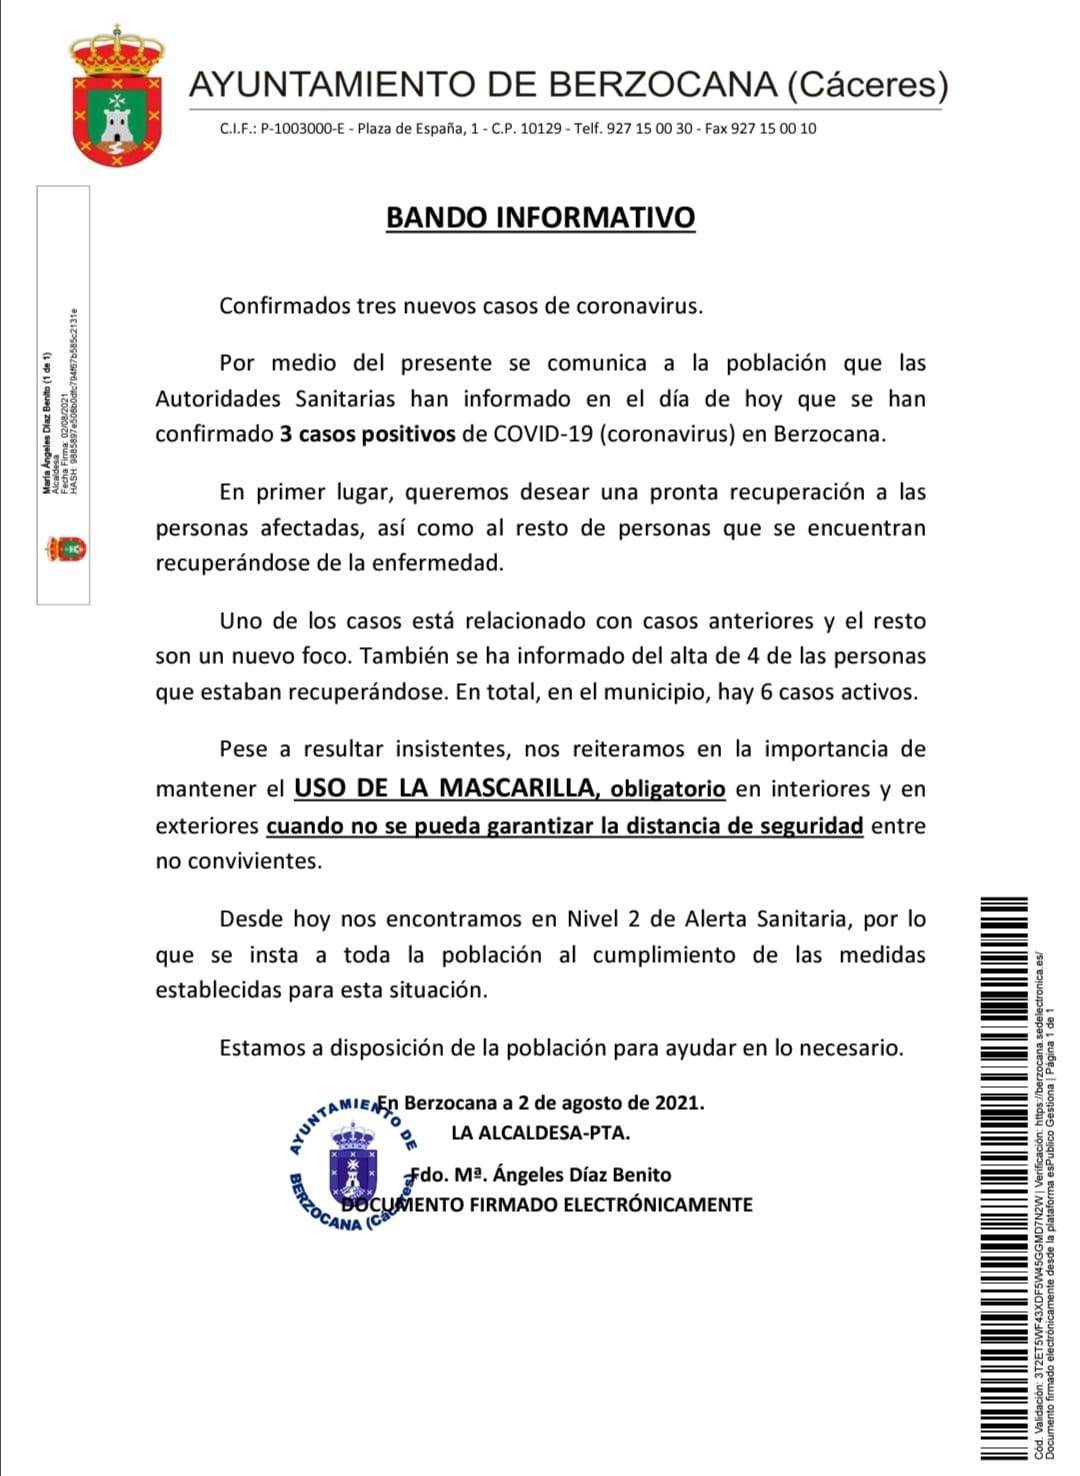 6 casos positivos activos de COVID-19 (agosto 2021) - Berzocana (Cáceres)